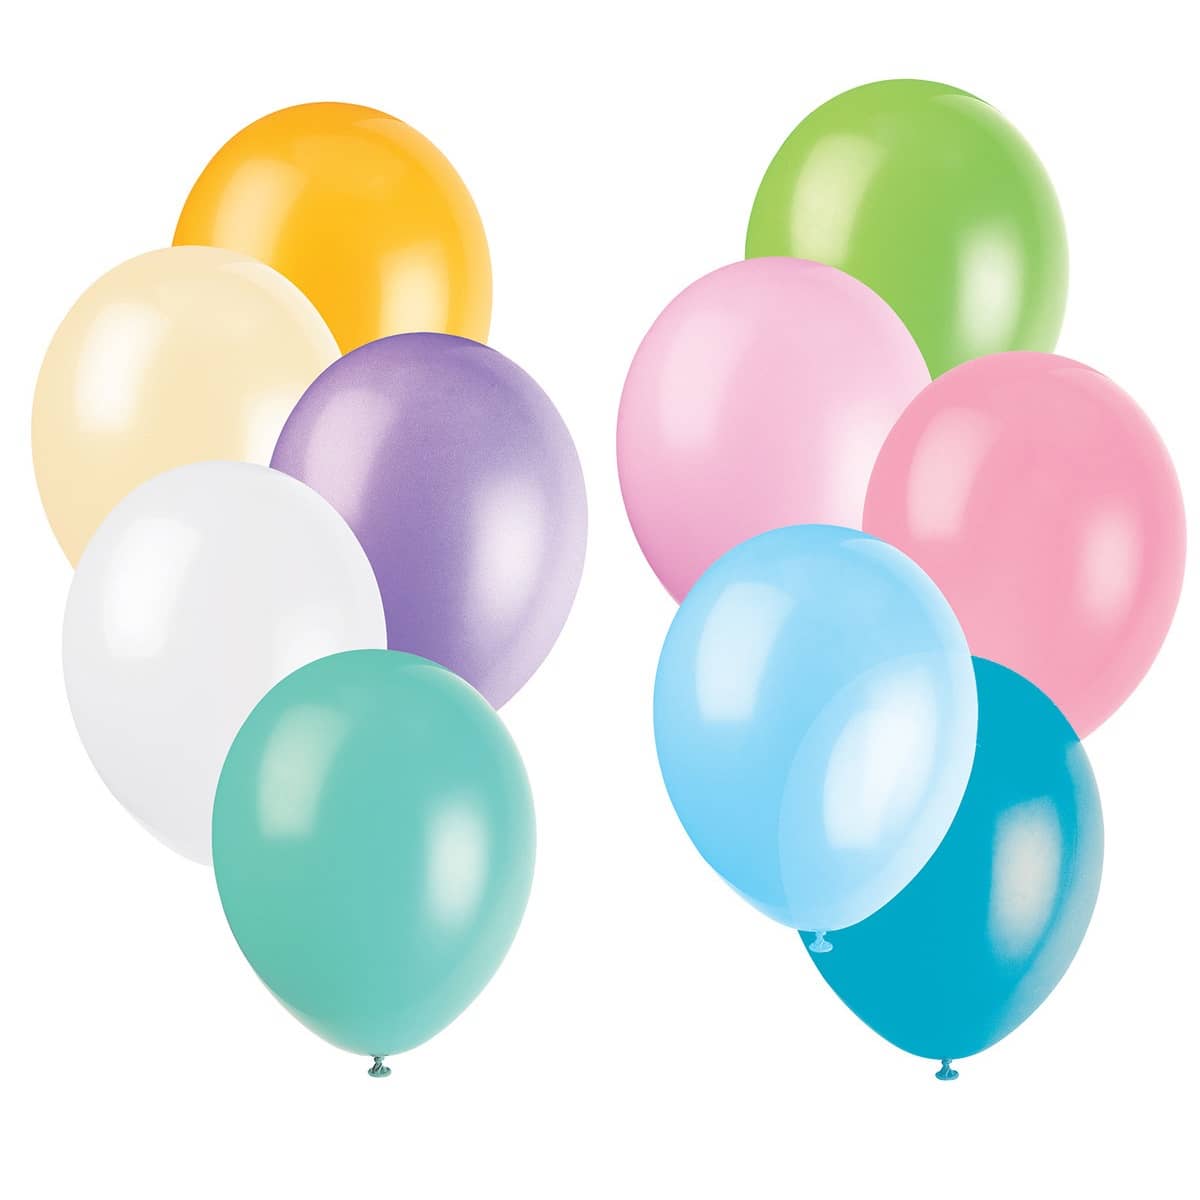 Premium Pastel Latex Balloons 30CM (12") 10pk Solid Colour - Party Owls